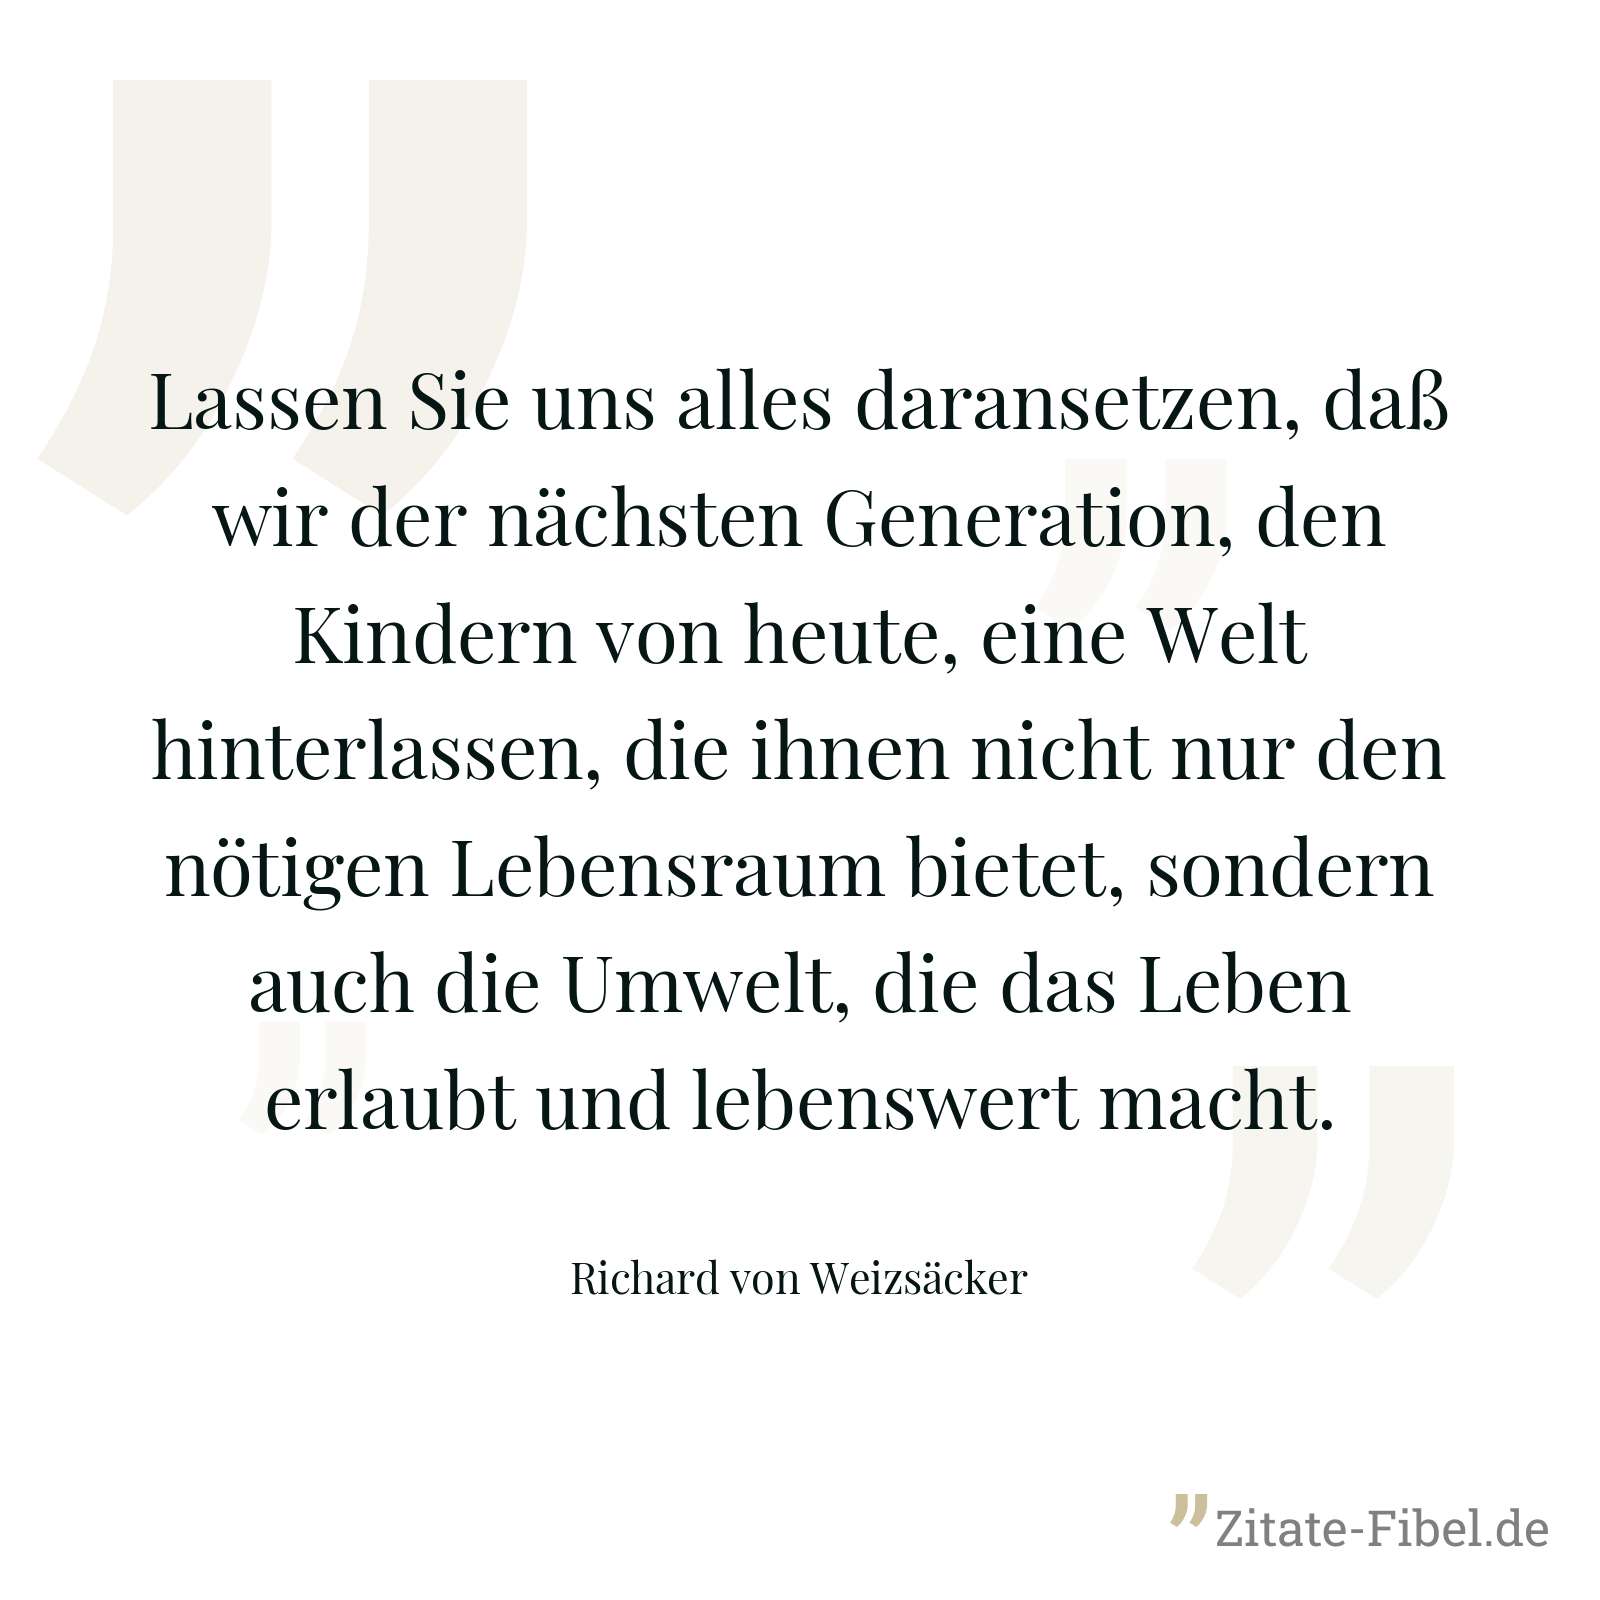 Lassen Sie uns alles daransetzen, daß wir der nächsten Generation, den Kindern von heute, eine Welt hinterlassen, die ihnen nicht nur den nötigen Lebensraum bietet, sondern auch die Umwelt, die das Leben erlaubt und lebenswert macht. - Richard von Weizsäcker